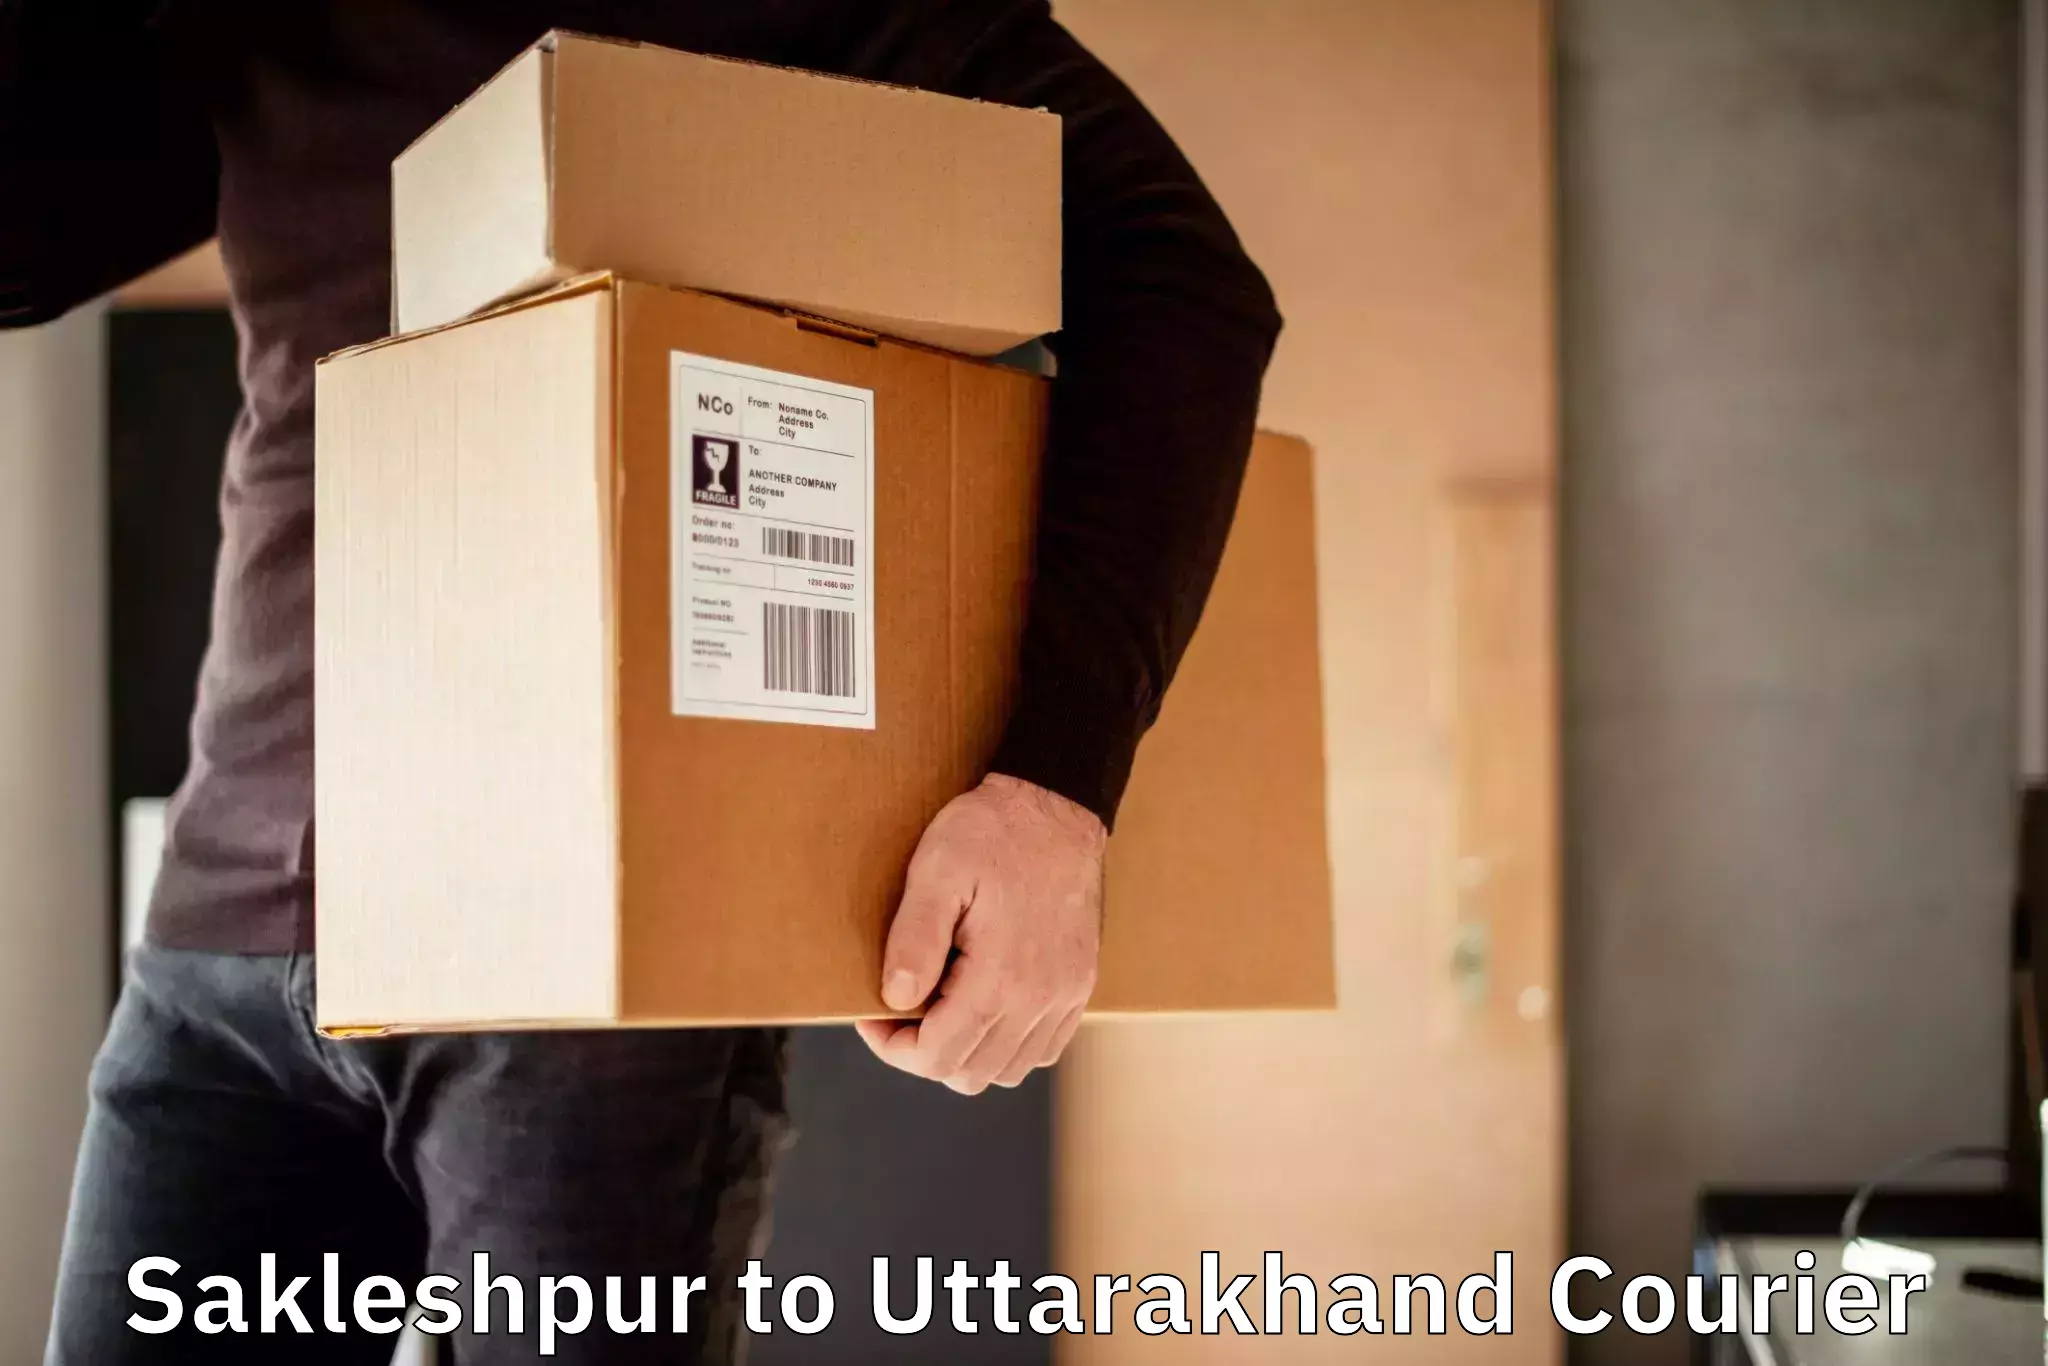 Courier service comparison in Sakleshpur to Udham Singh Nagar